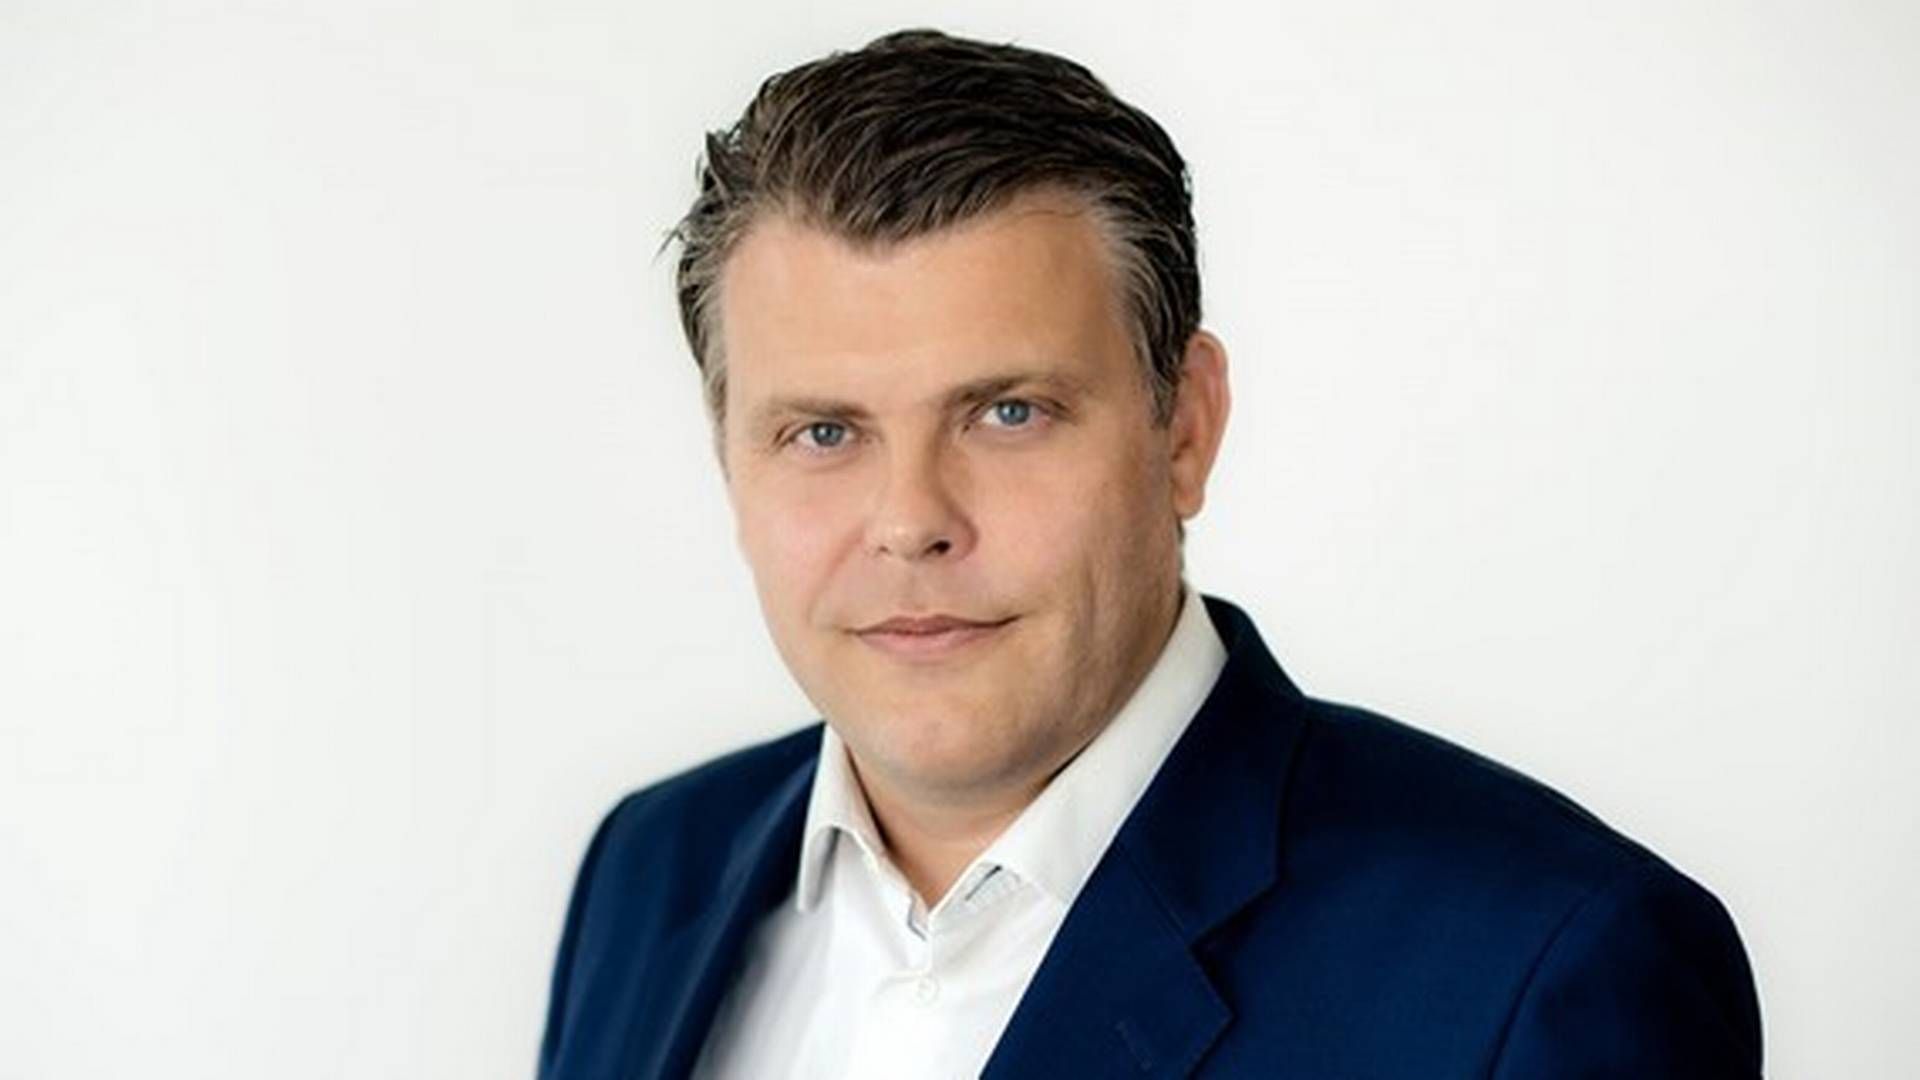 Den tidligere Frp-politikeren Jøran Kallmyr var justisminister i Solberg-regjeringen fra 29. mars 2019 til 24. januar 2020, da han gikk ut av regjering. | Foto: Ræder